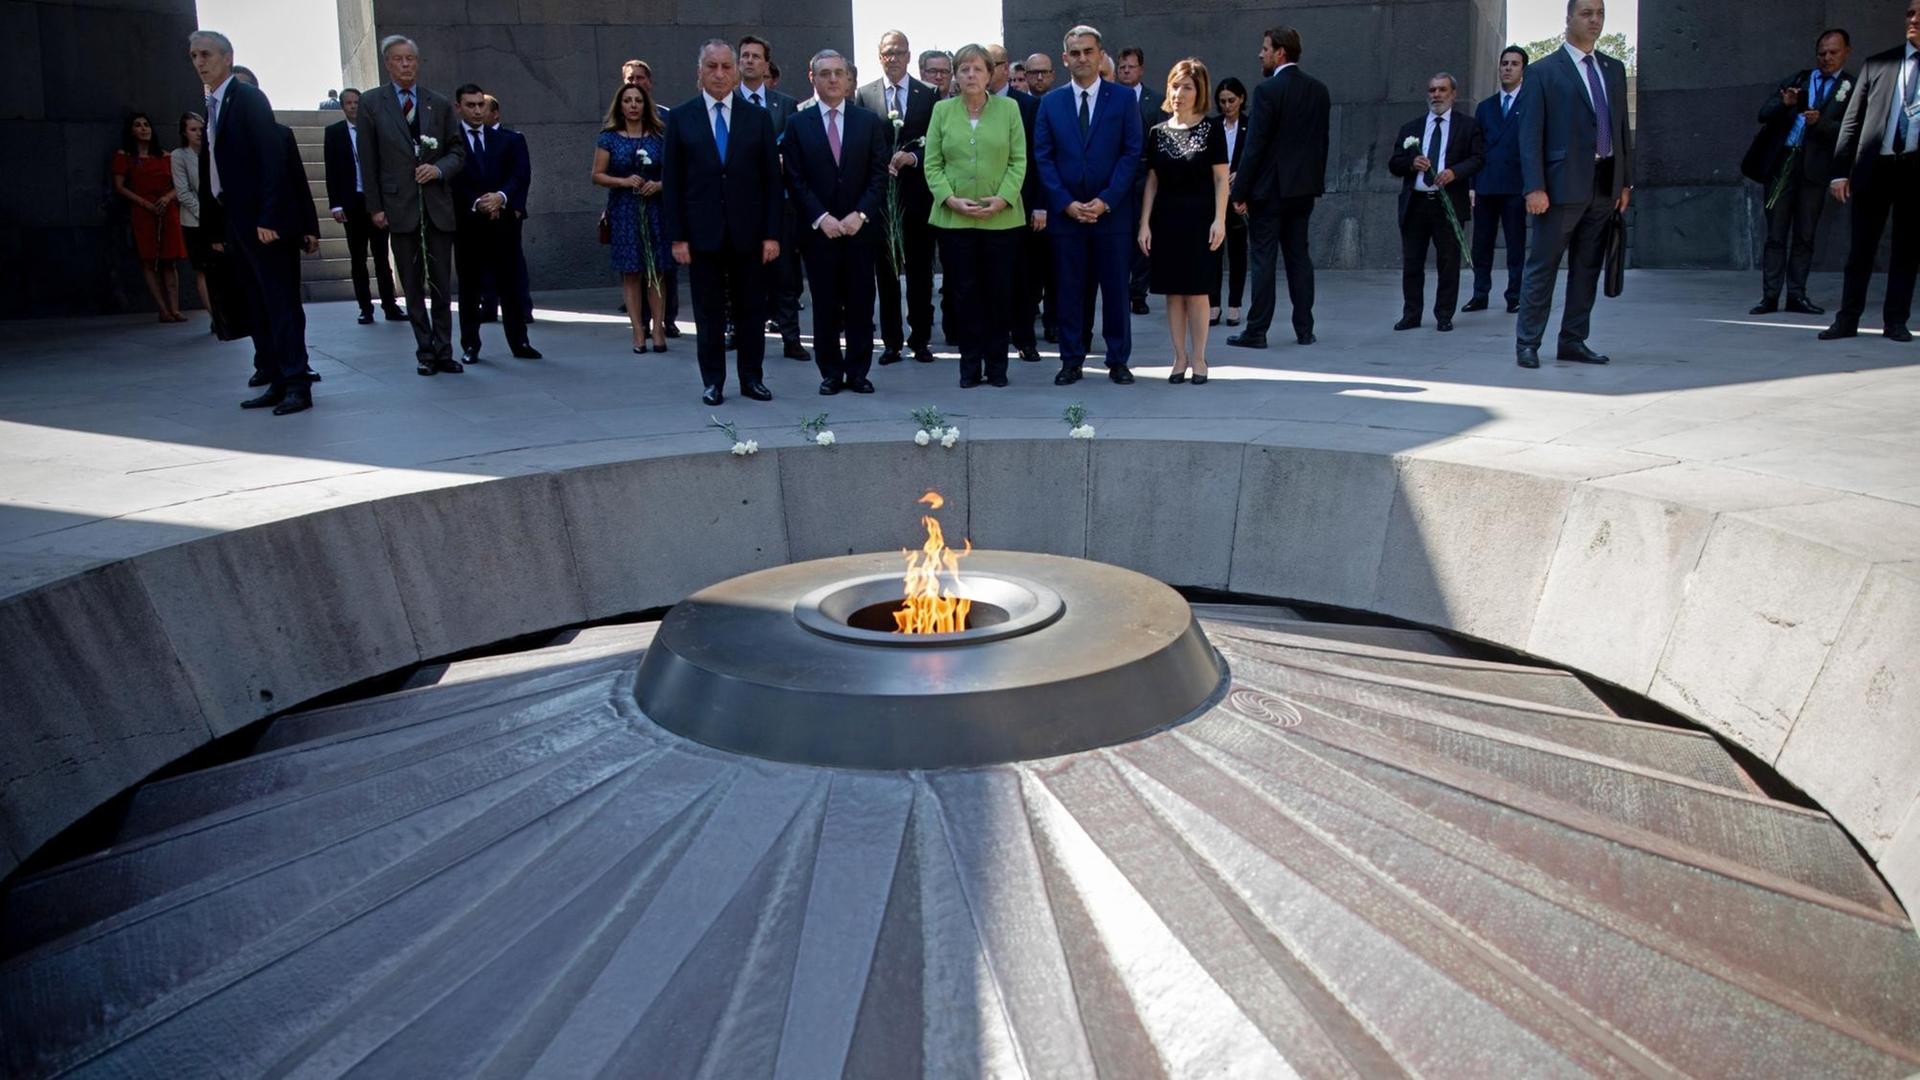 Merkel steht mit weiteren Personen in der Gedenkstätte Tsitsernakaberd in Armenien.